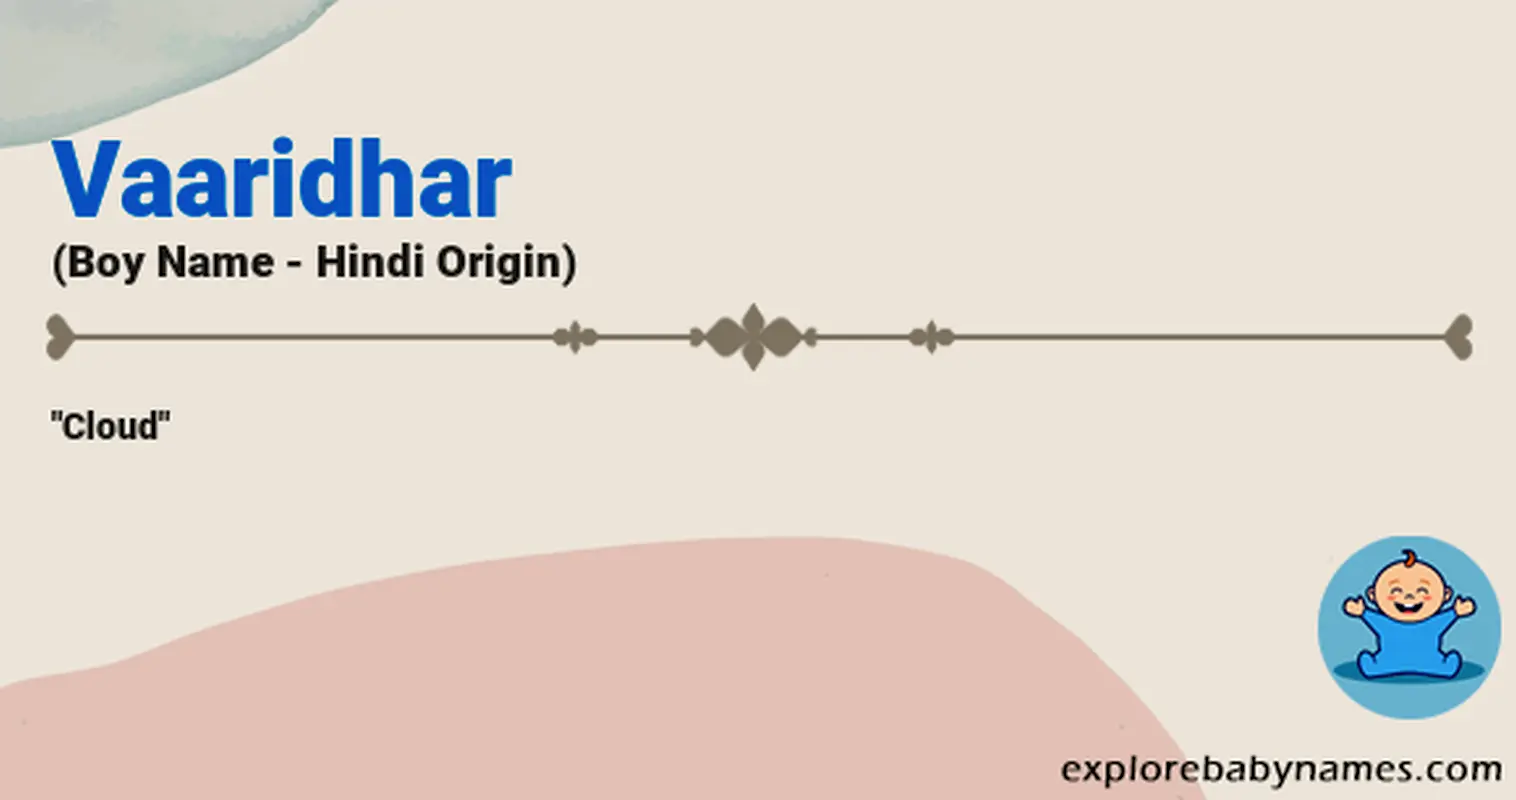 Meaning of Vaaridhar